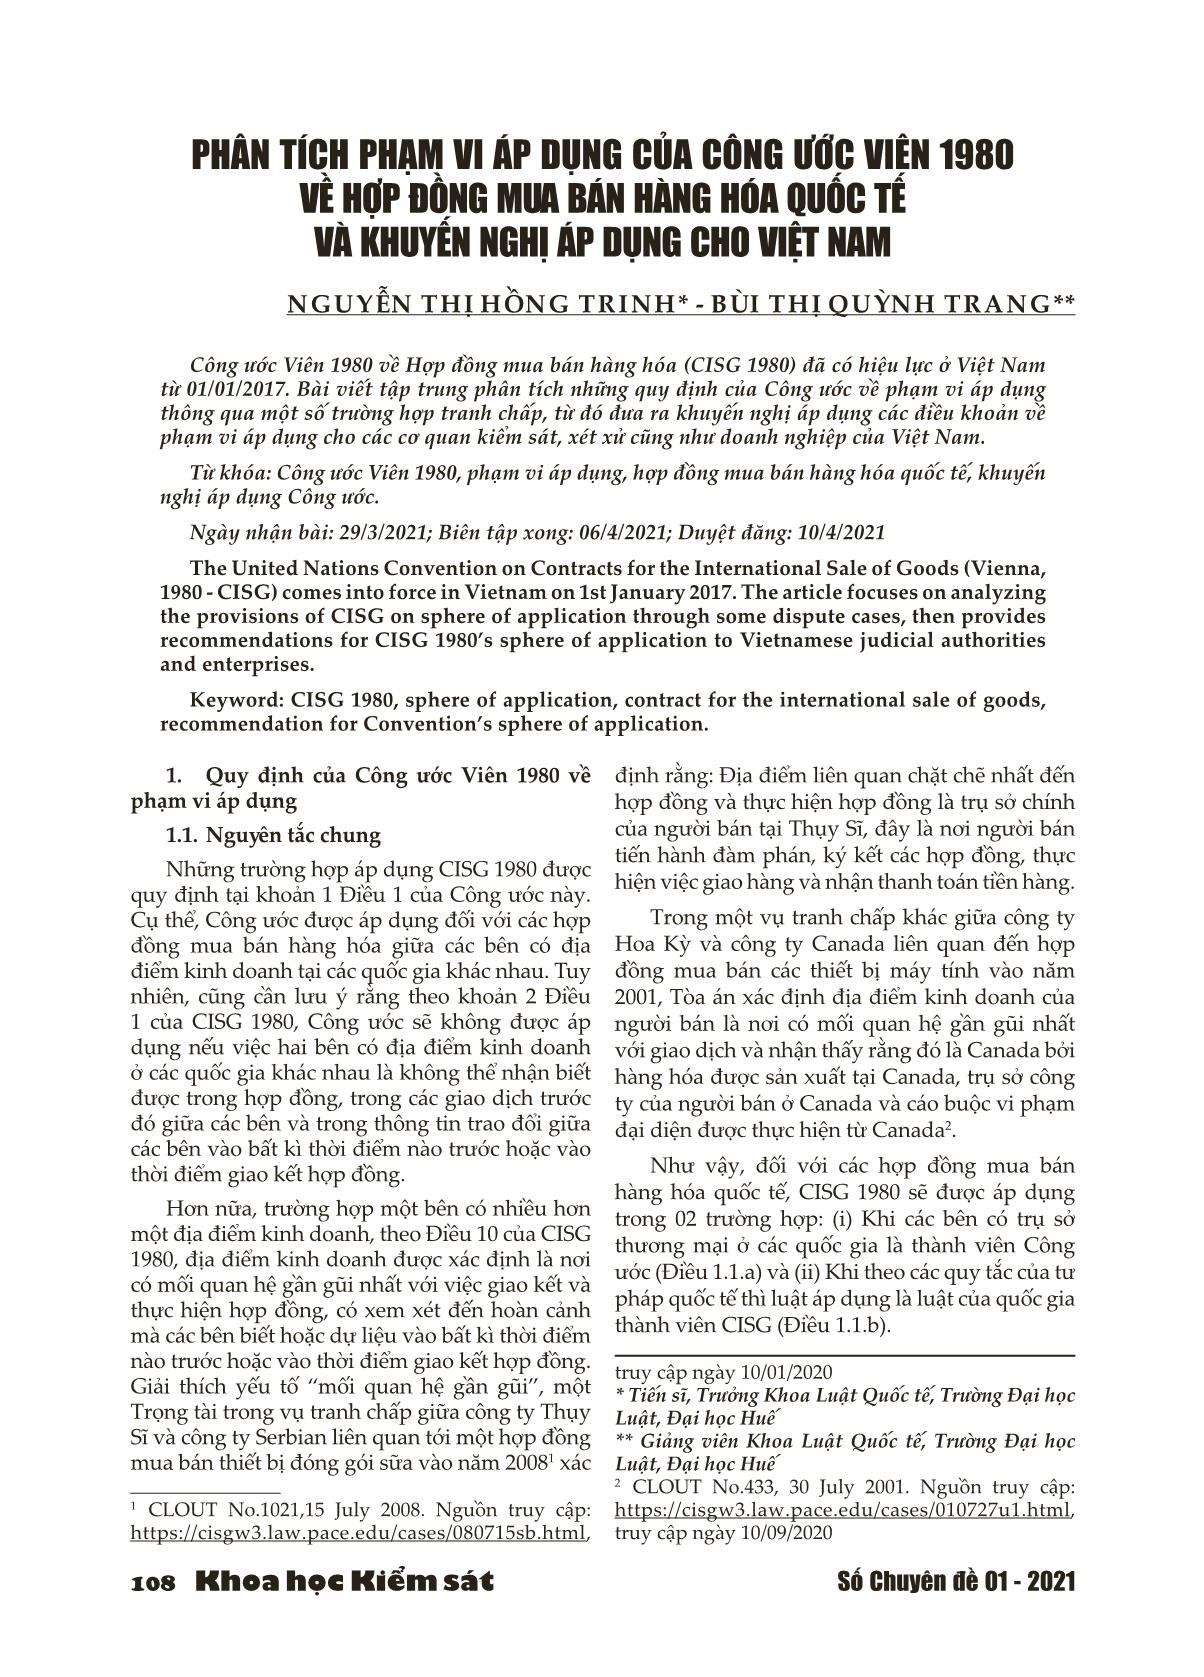 Phân tích phạm vi áp dụng của Công ước viên 1980 về hợp đồng mua bán hàng hóa quốc tế và khuyến nghị áp dụng cho Việt Nam trang 1